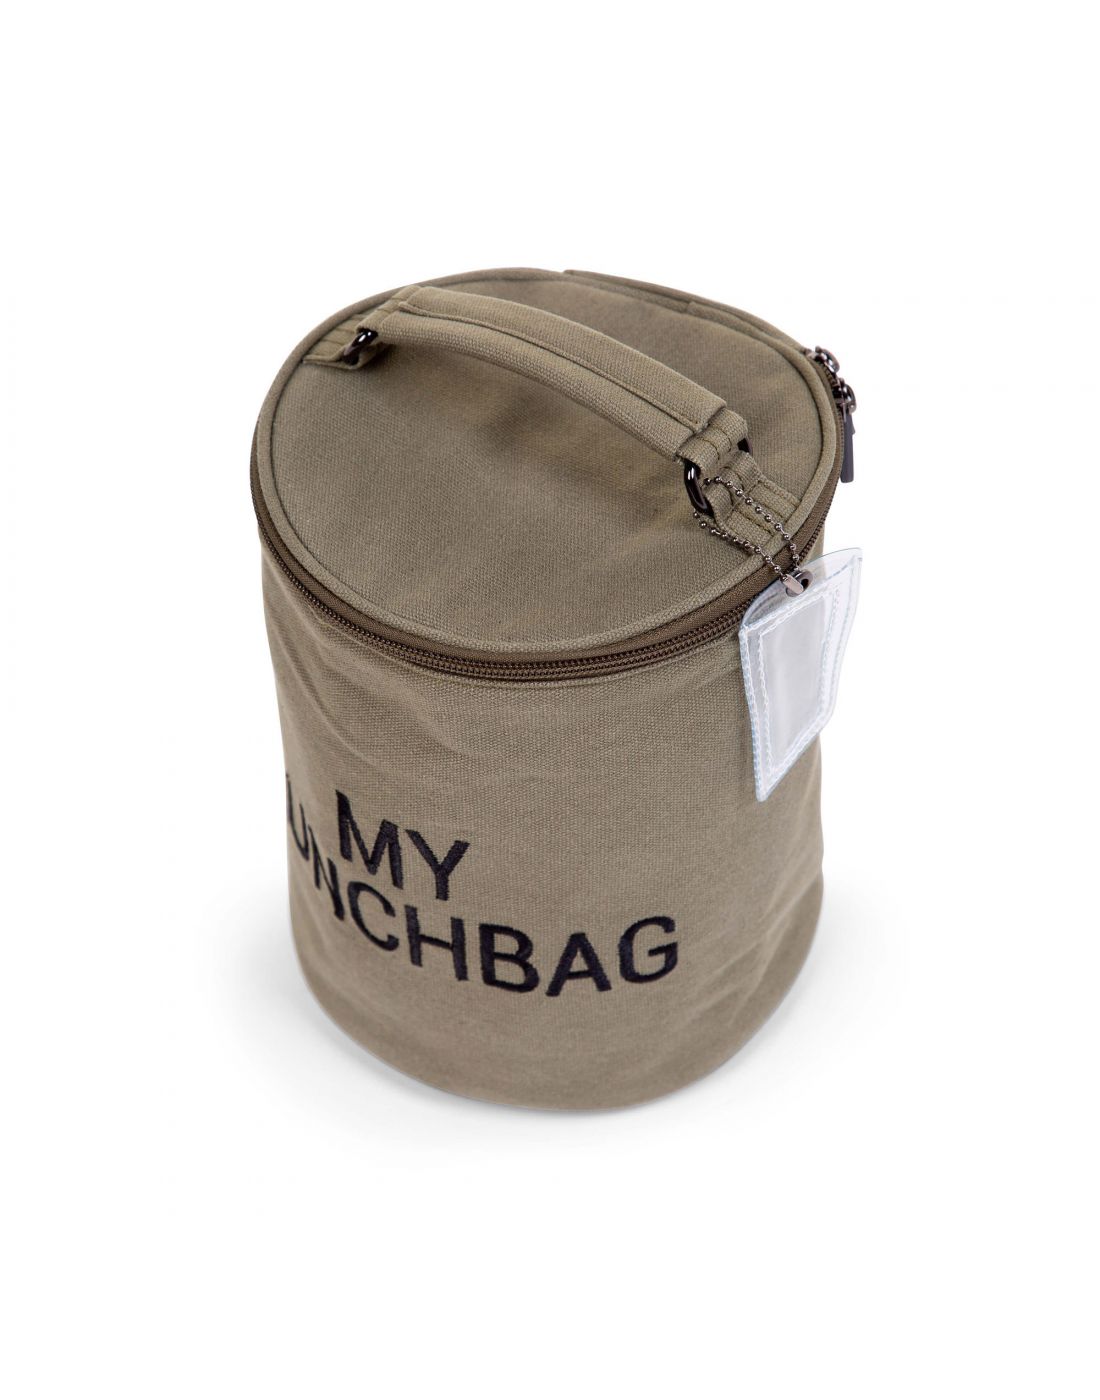 Τσάντα Childhome My Lunch Bag με Ισοθερμική Επένδυση Canvas Kaki